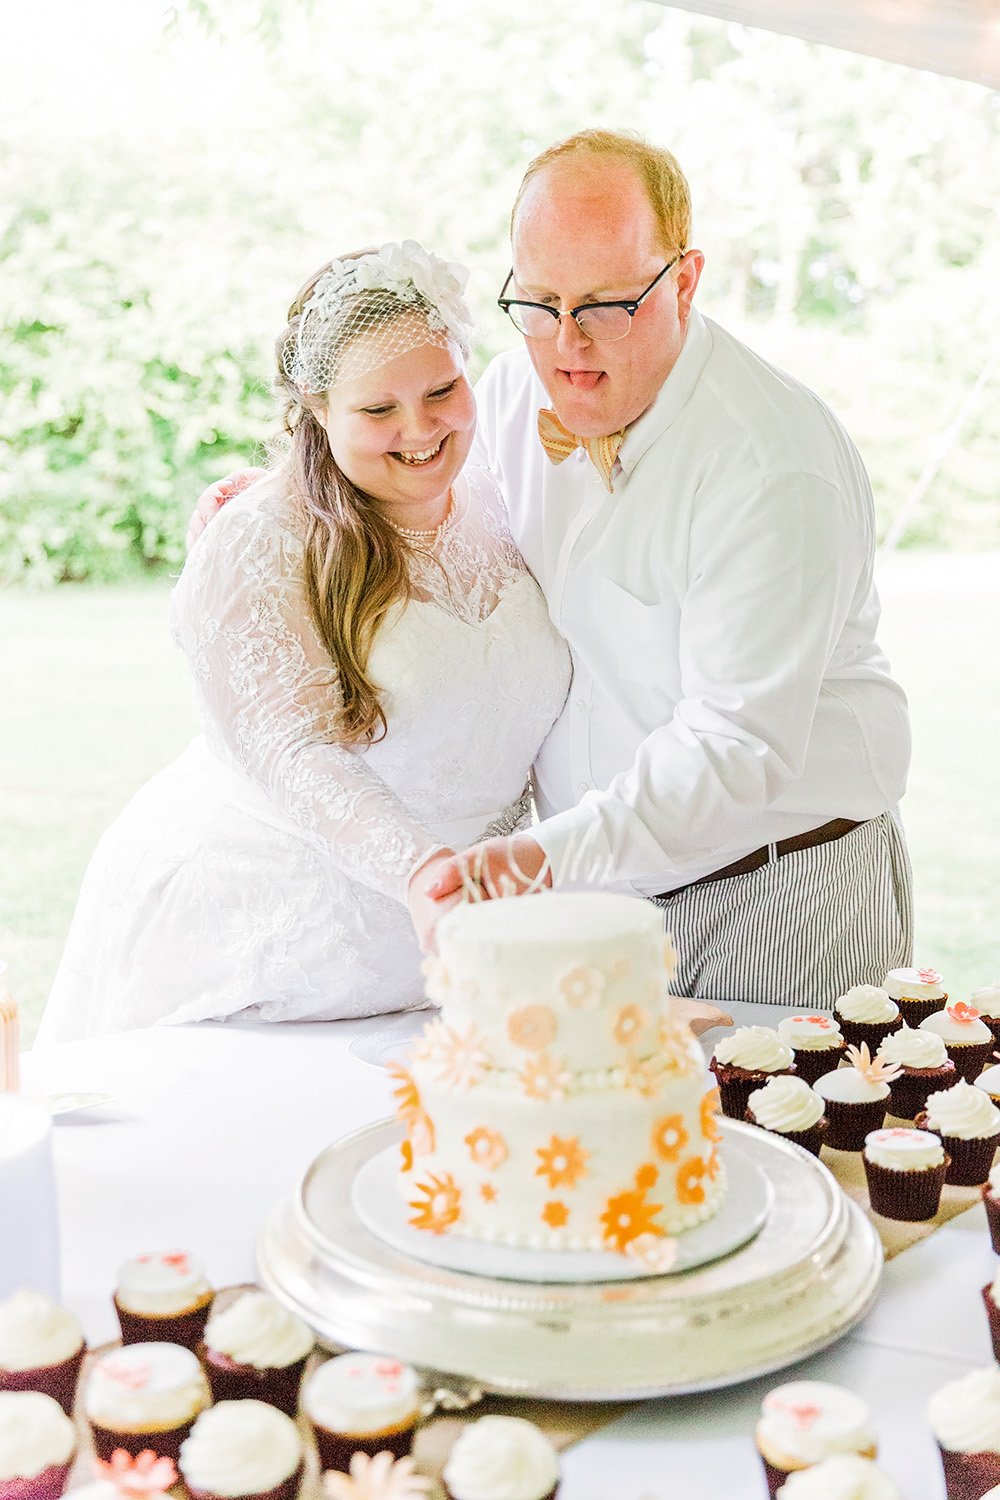 Wedding cake at Longstraw Farms wedding in Ayden, NC